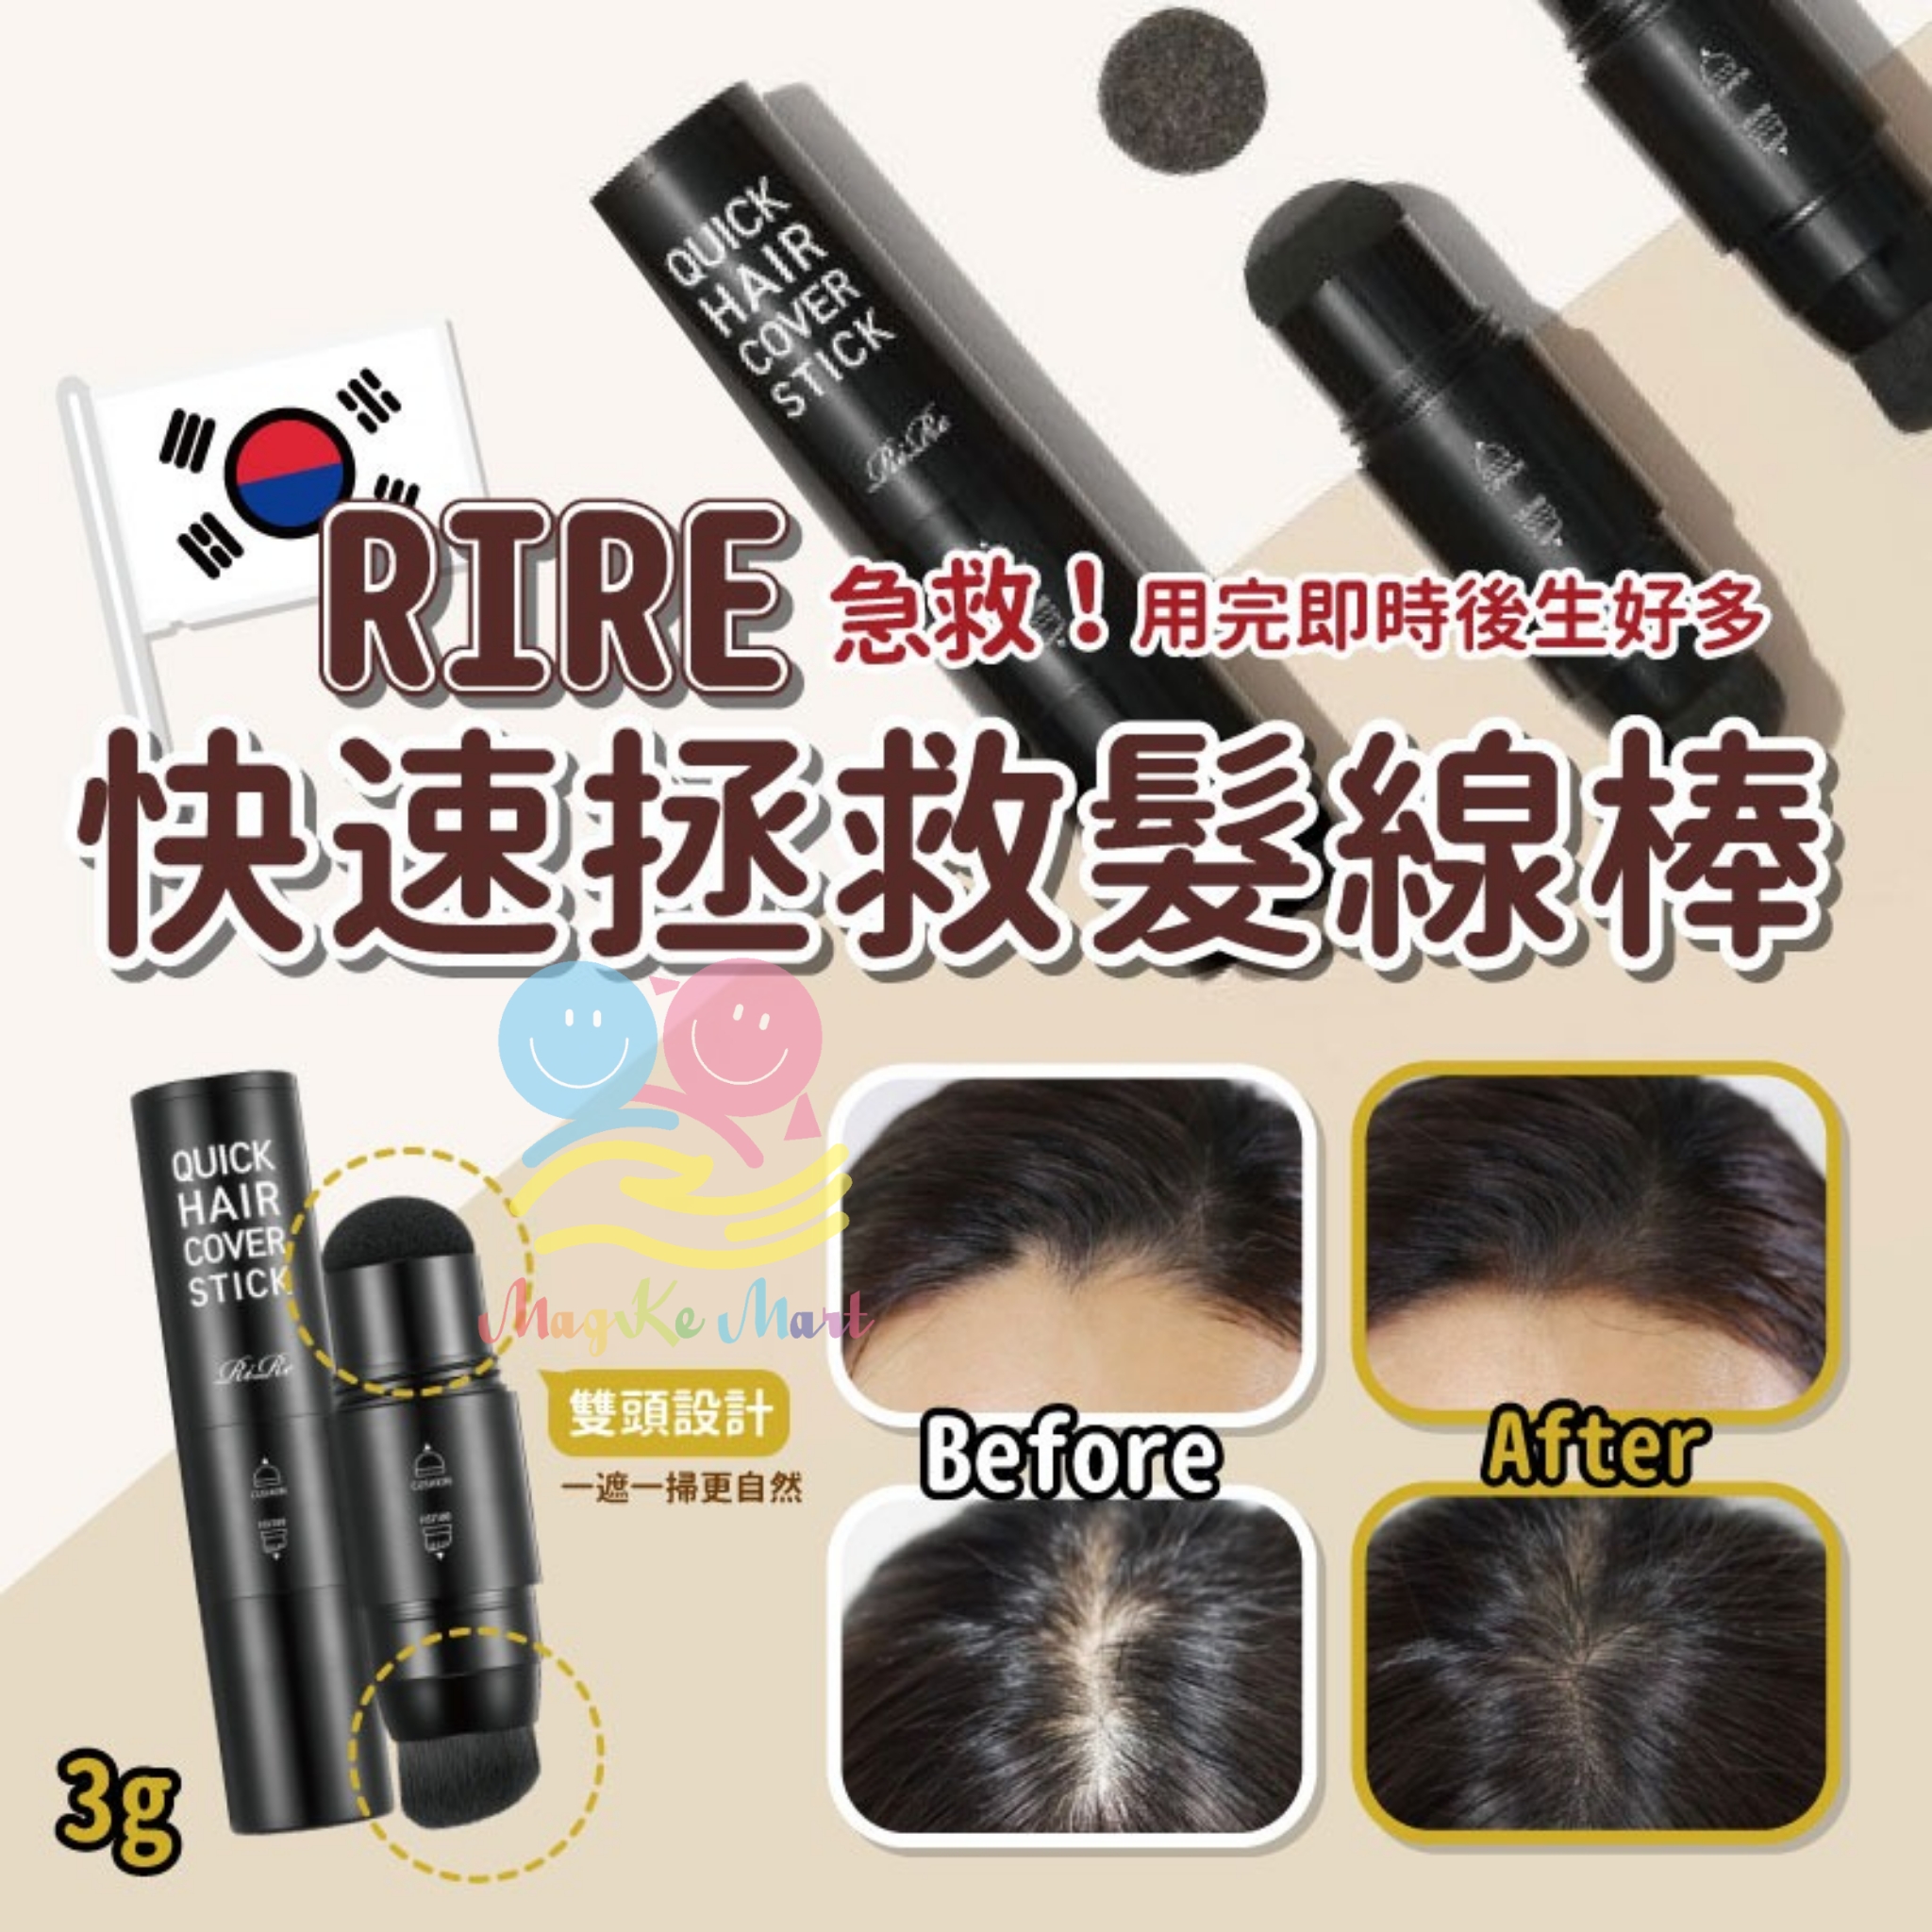 韓國 Rire 快速拯救髮線棒 3g (B) 啡色